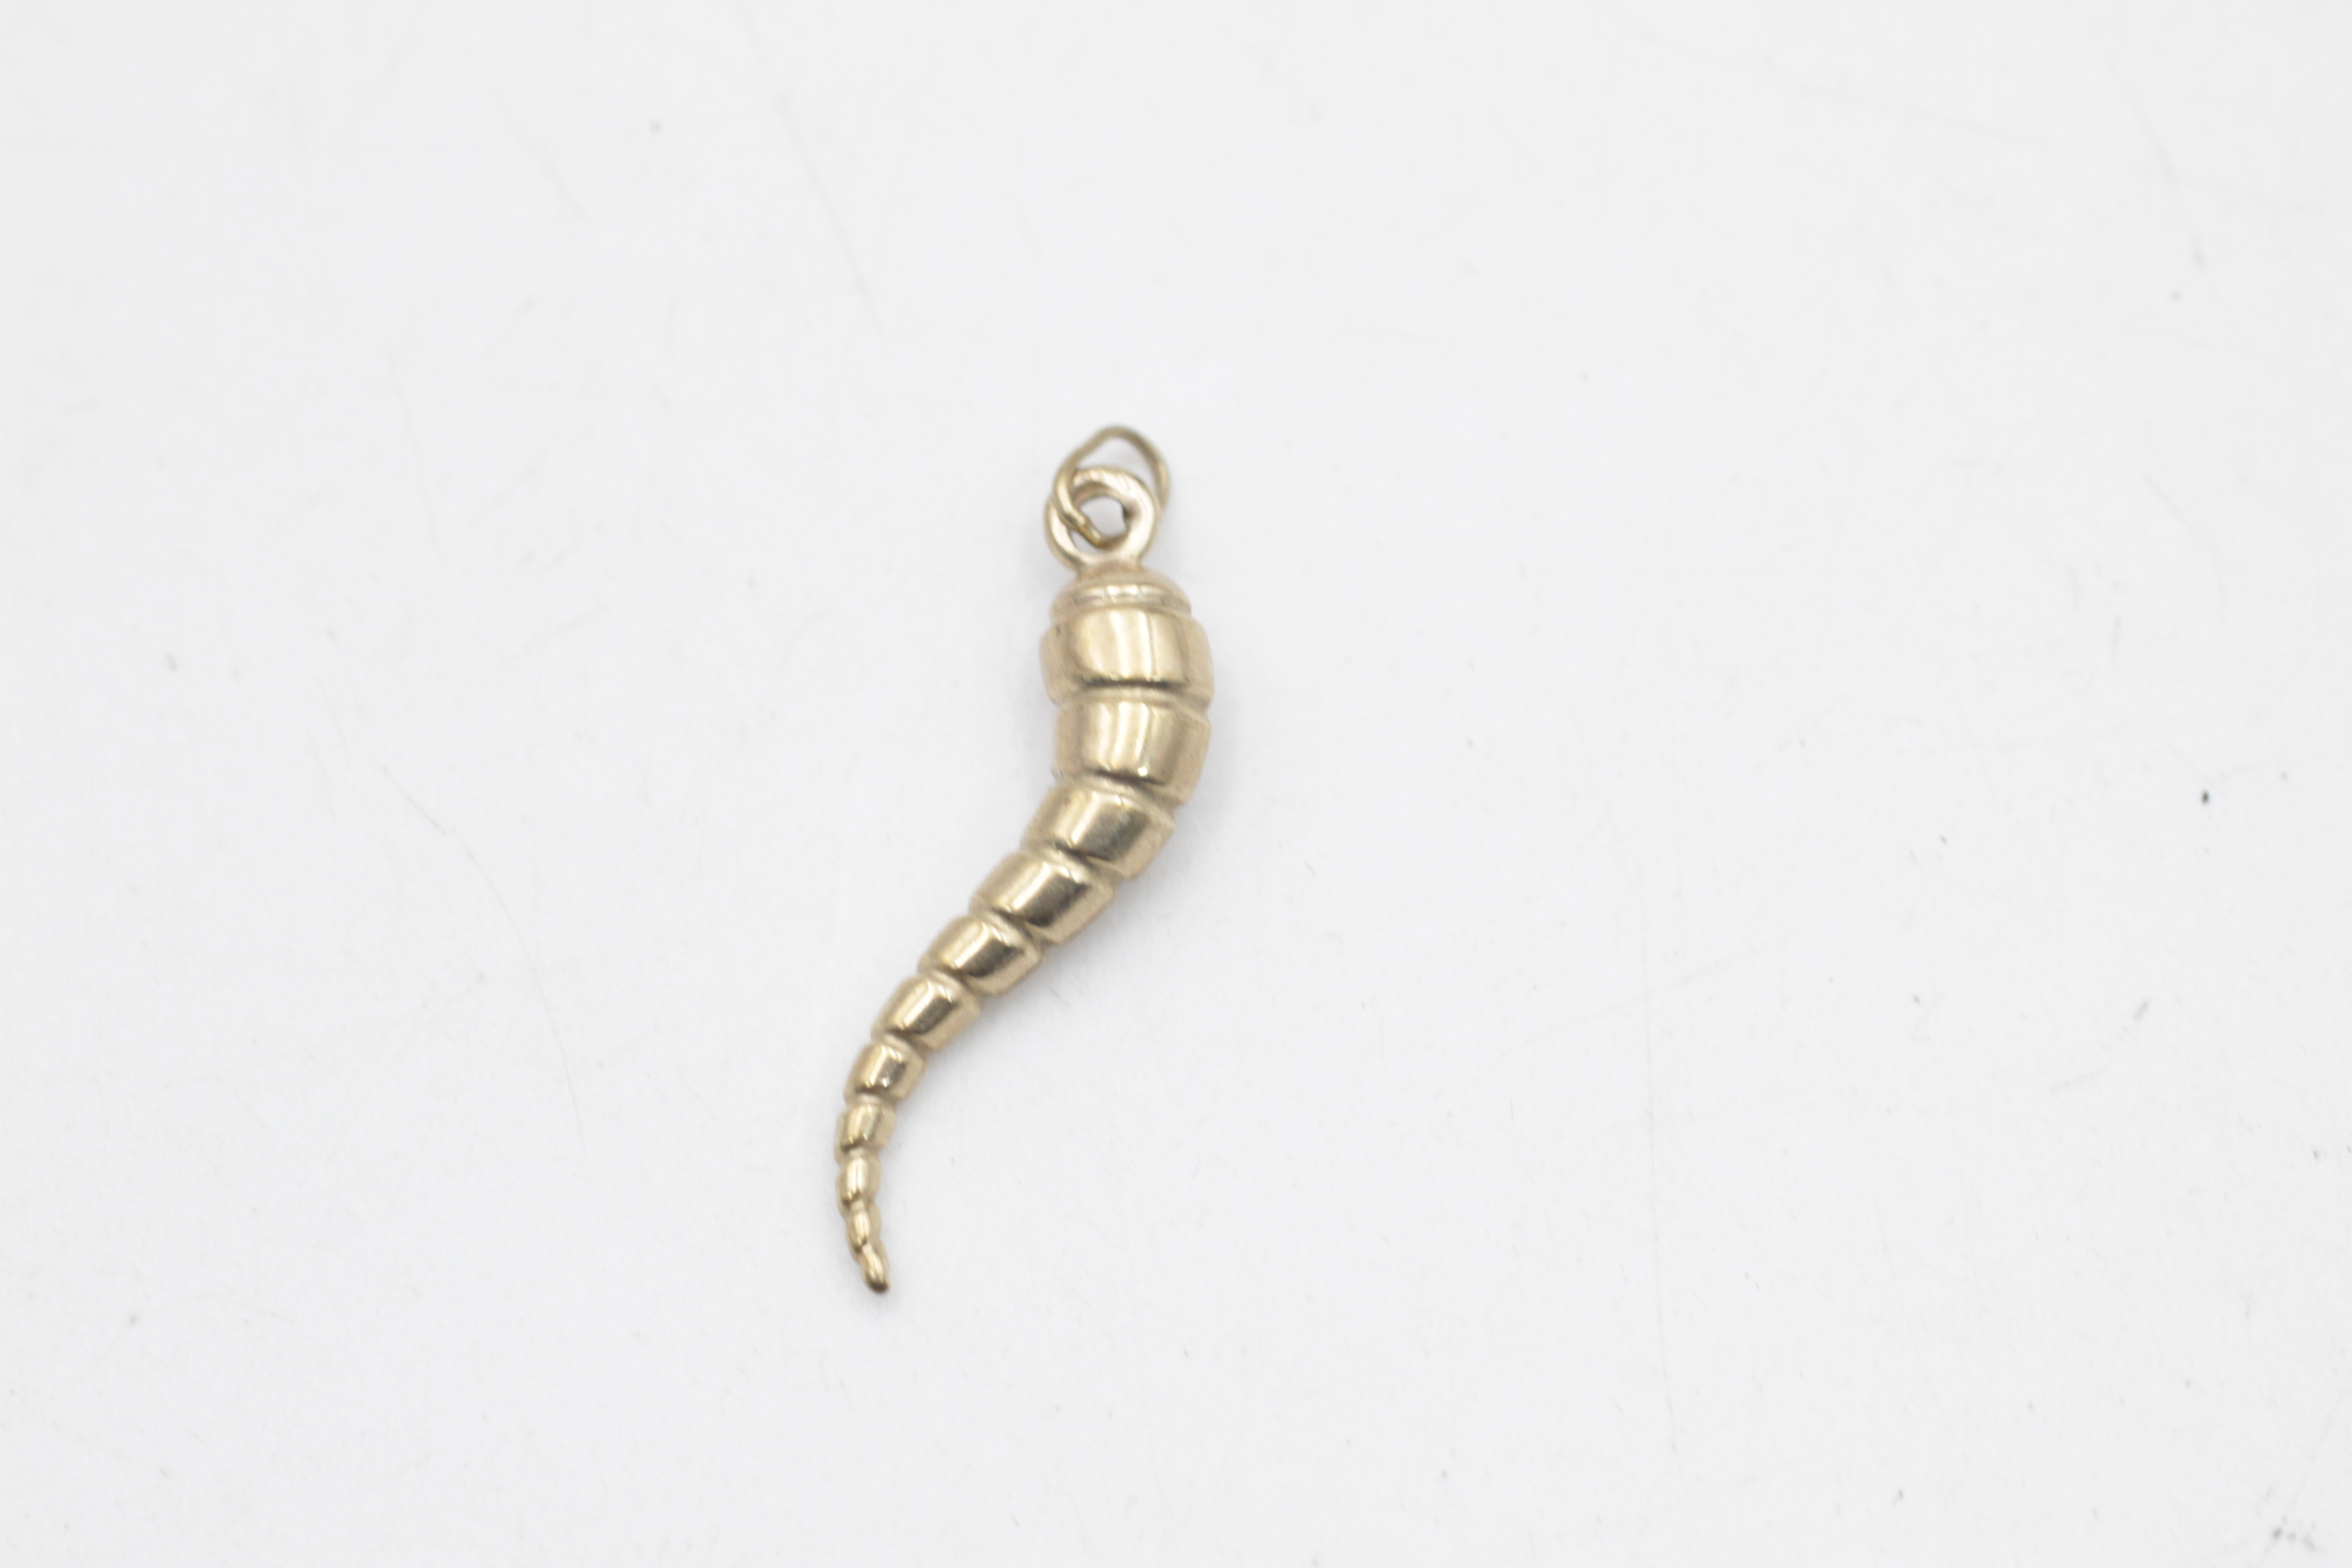 9ct gold horn of plenty charm pendant (0.5g)